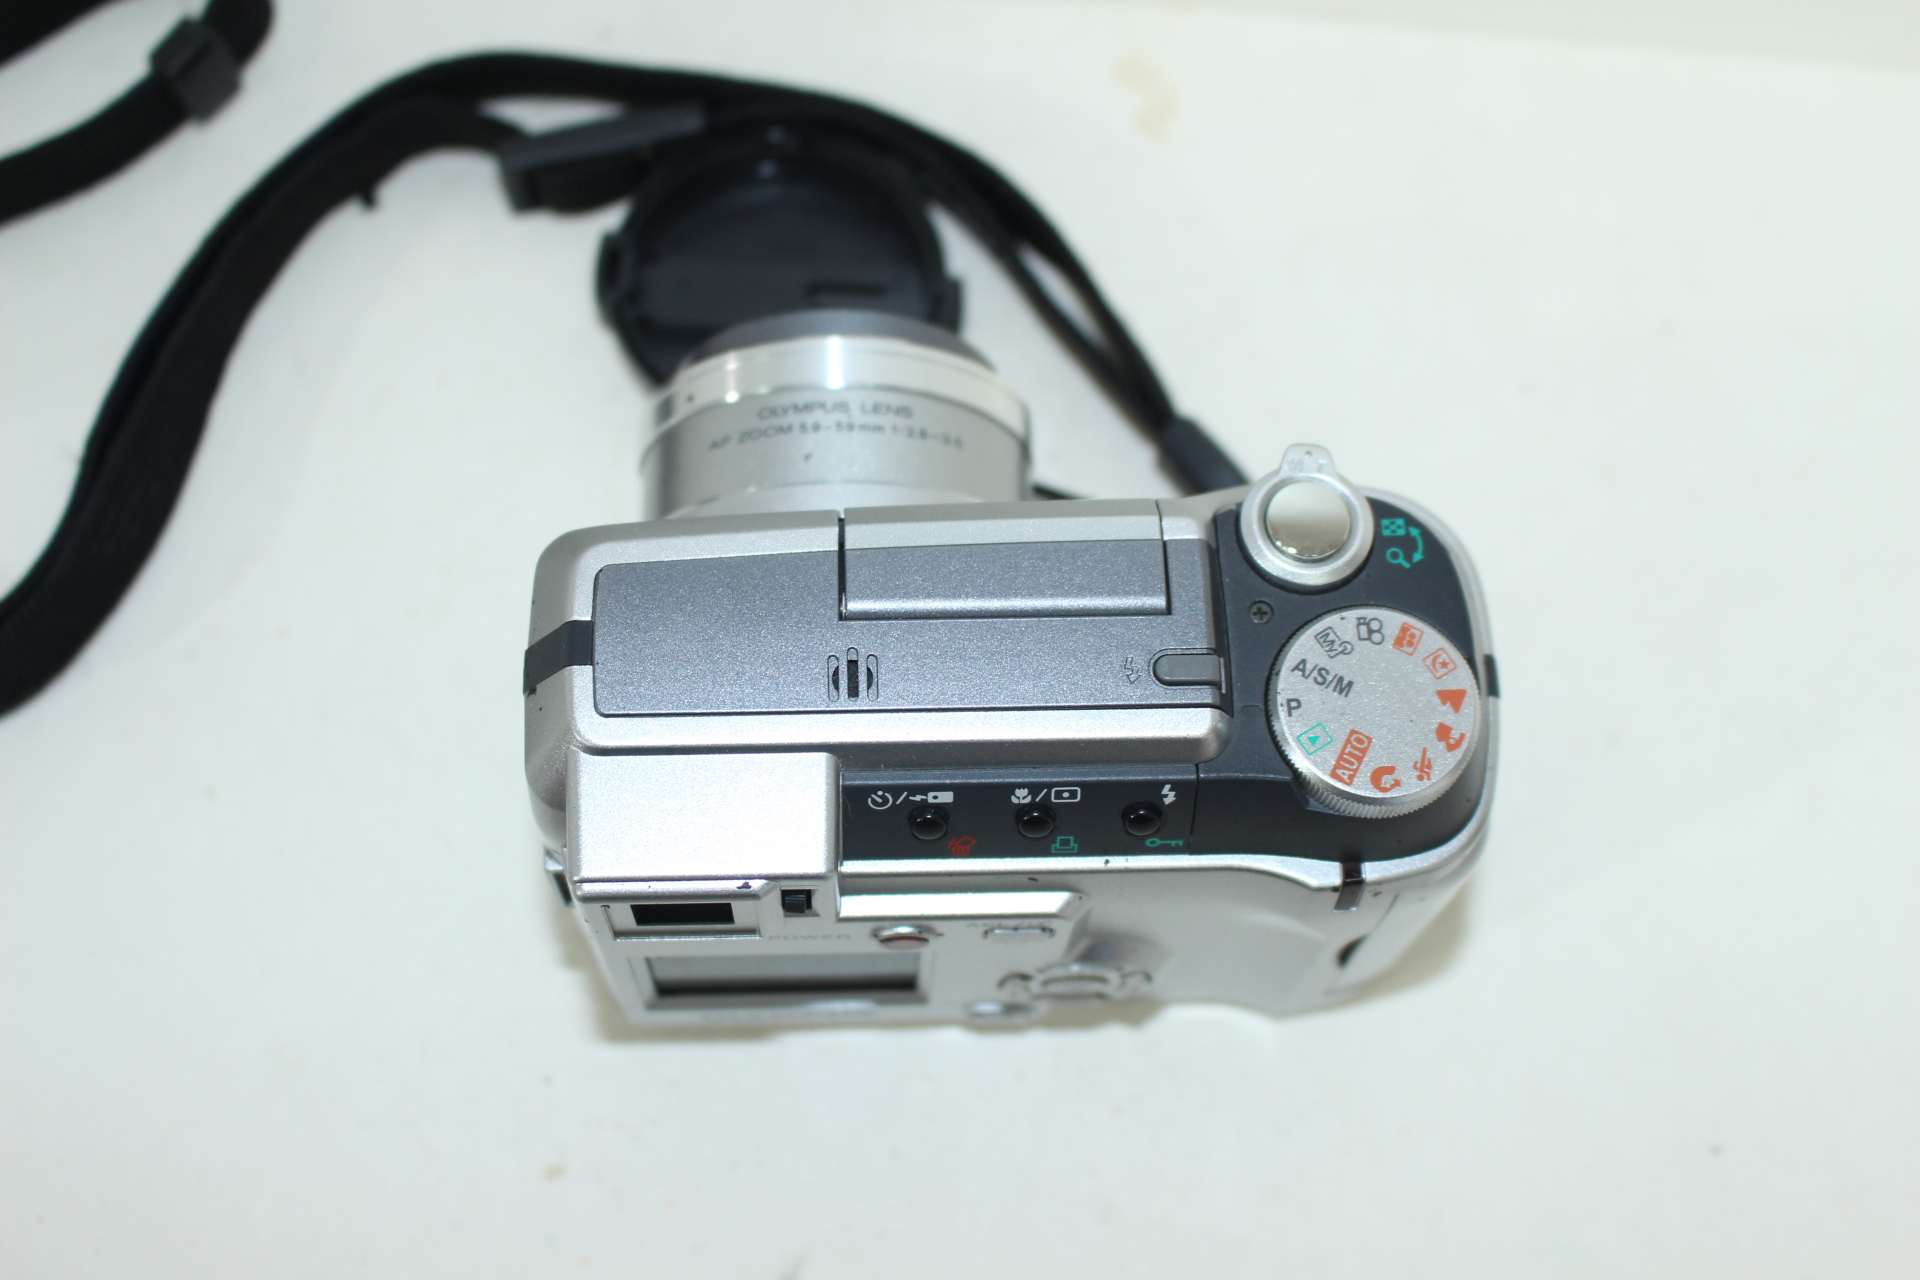 올림푸스 디지털 카메라